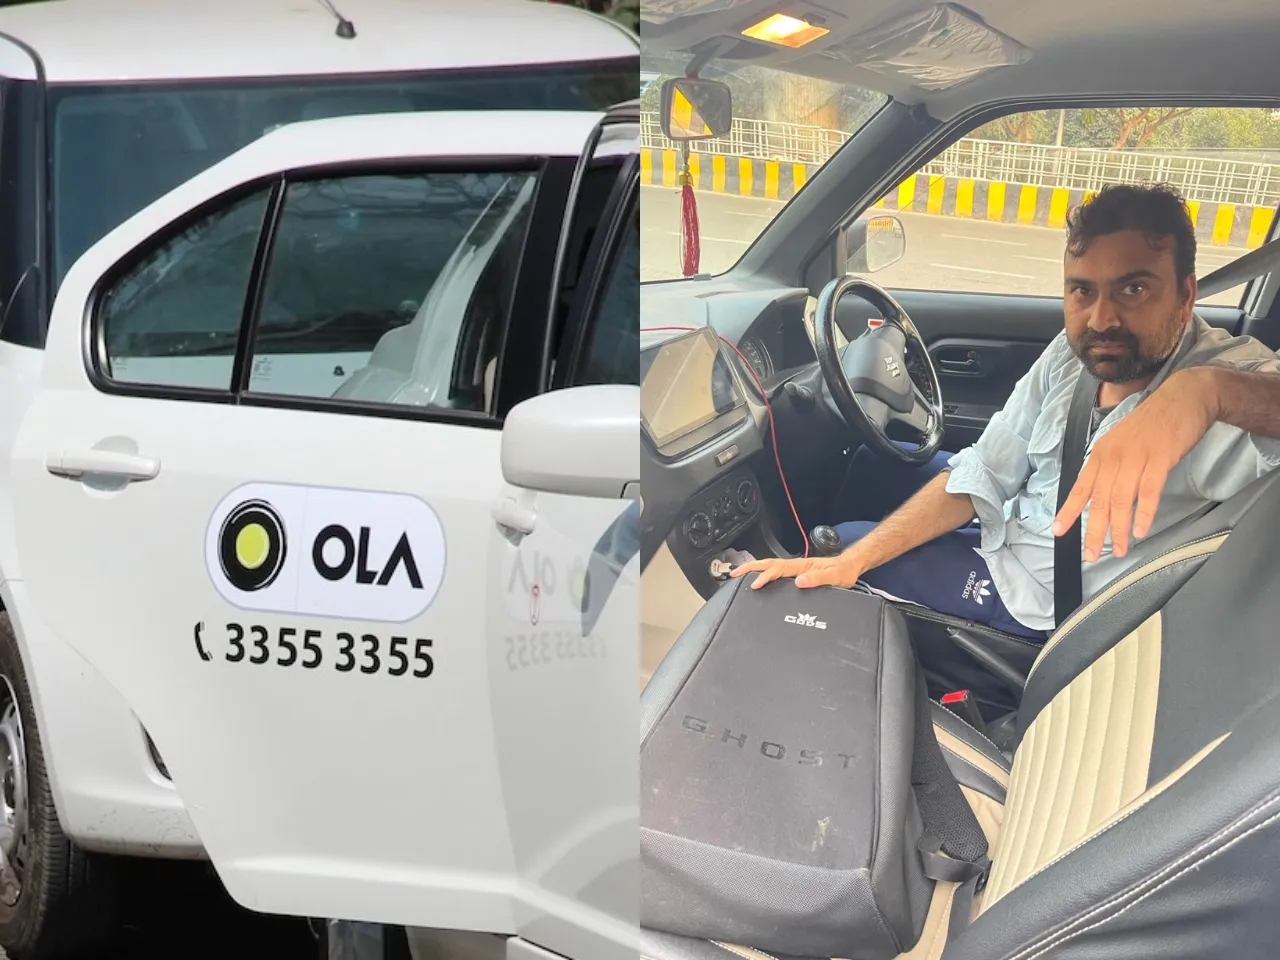 Ola cab driver 'slaps' man